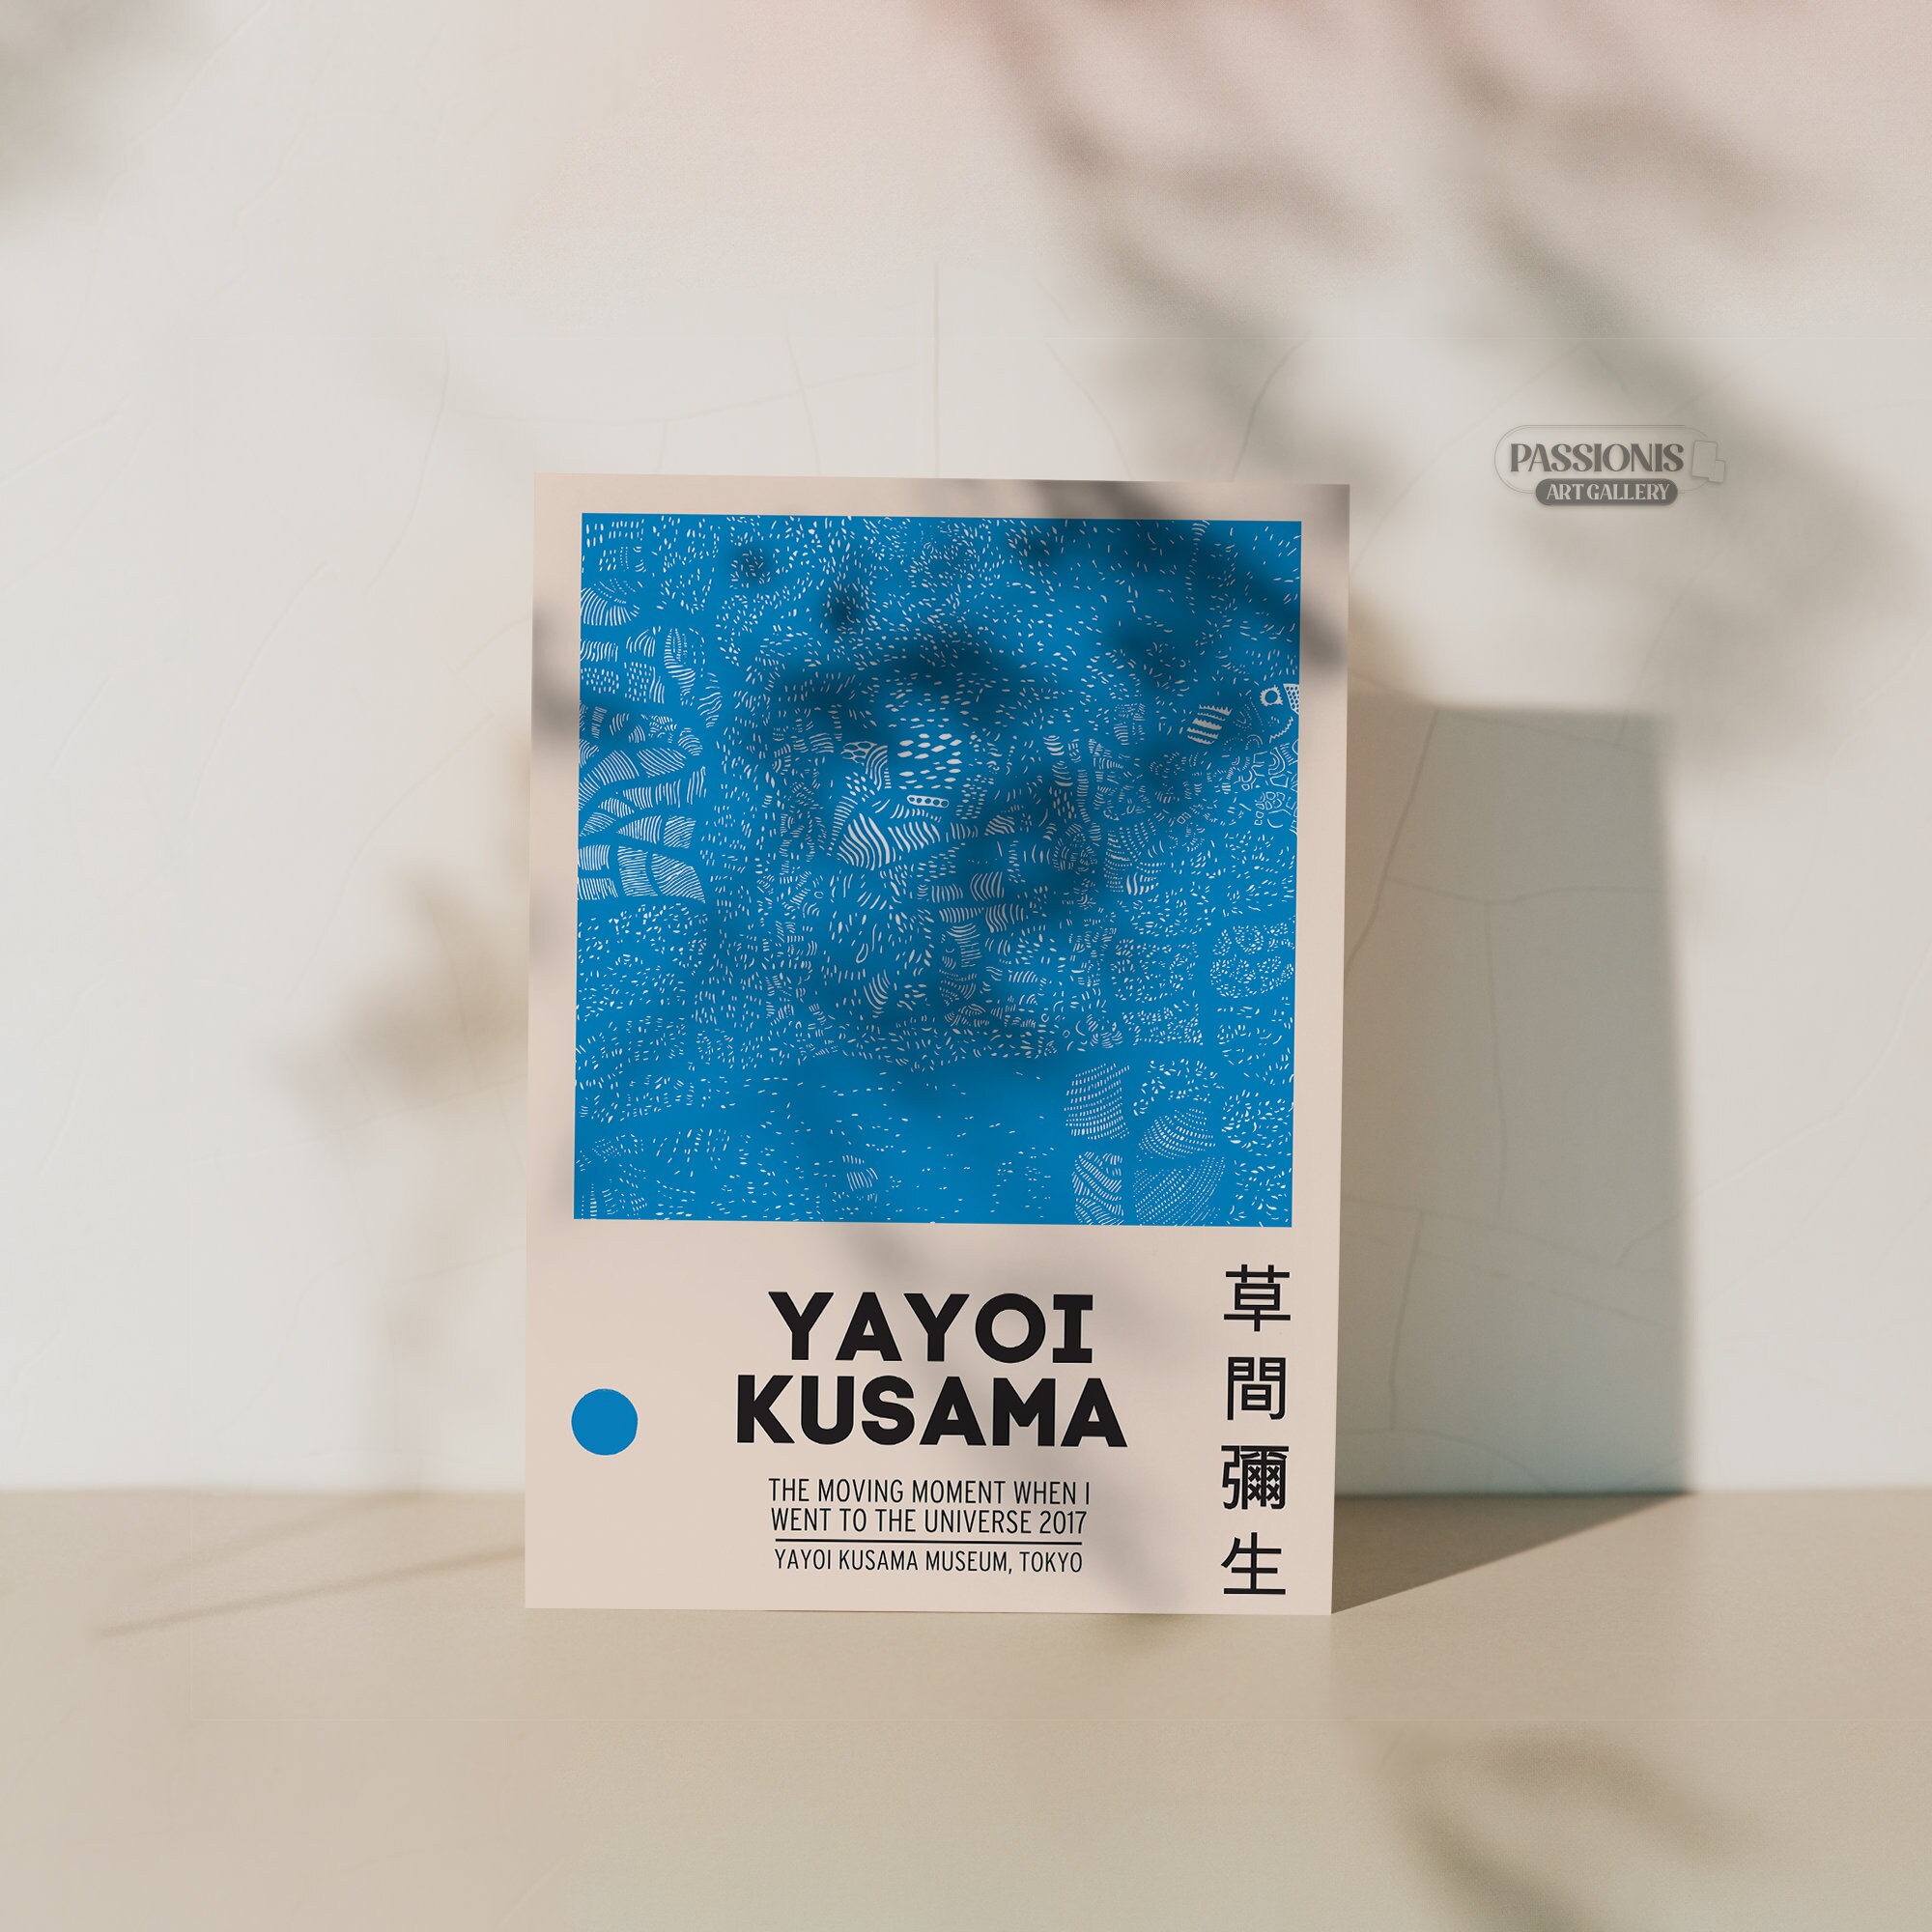 Yayoi Kusama Poster, The Moving Moment